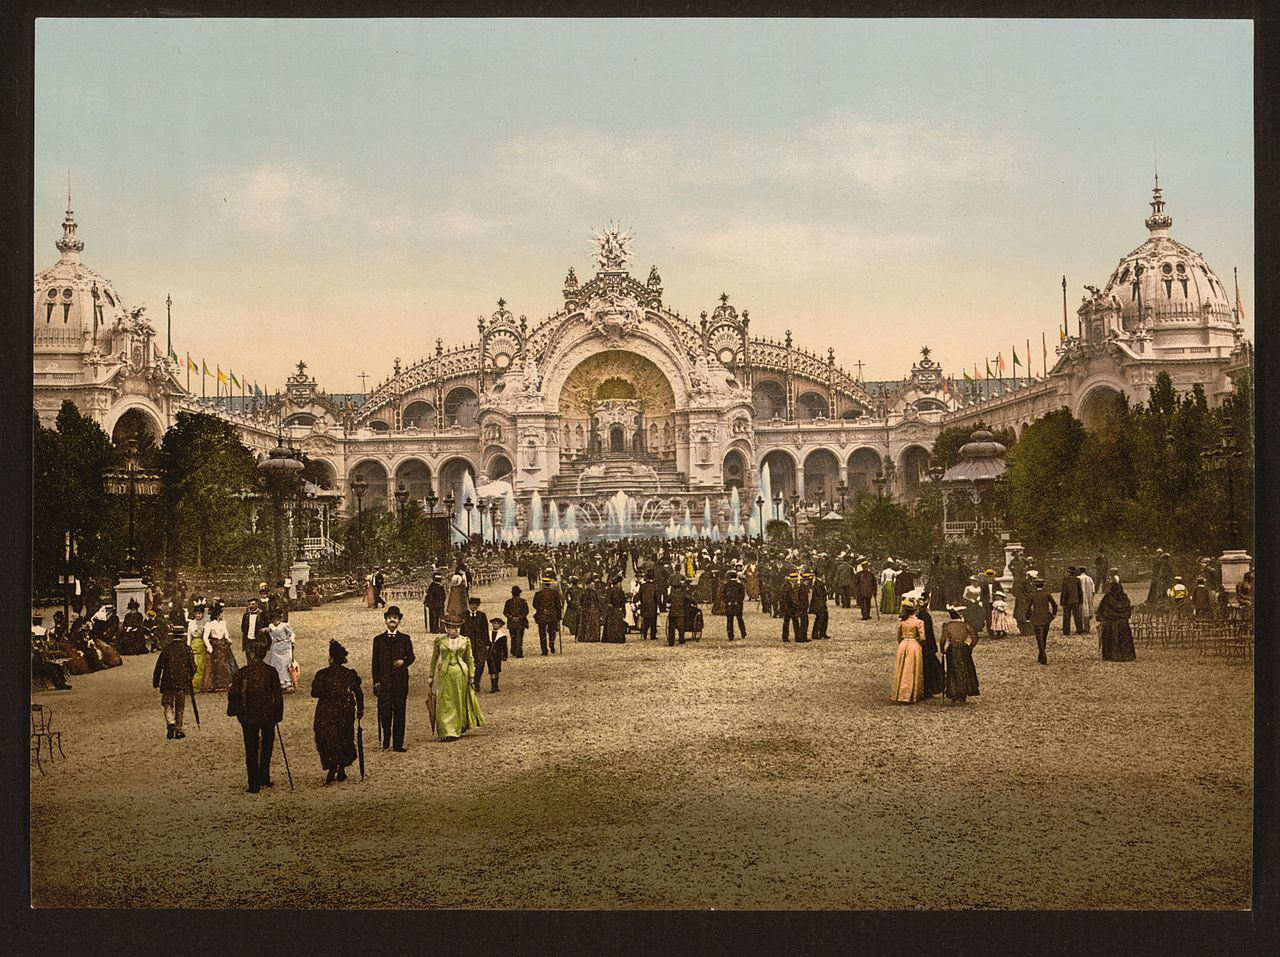 Le Château d'eau and plaza, Exposition Universal, 1900, Paris, France 